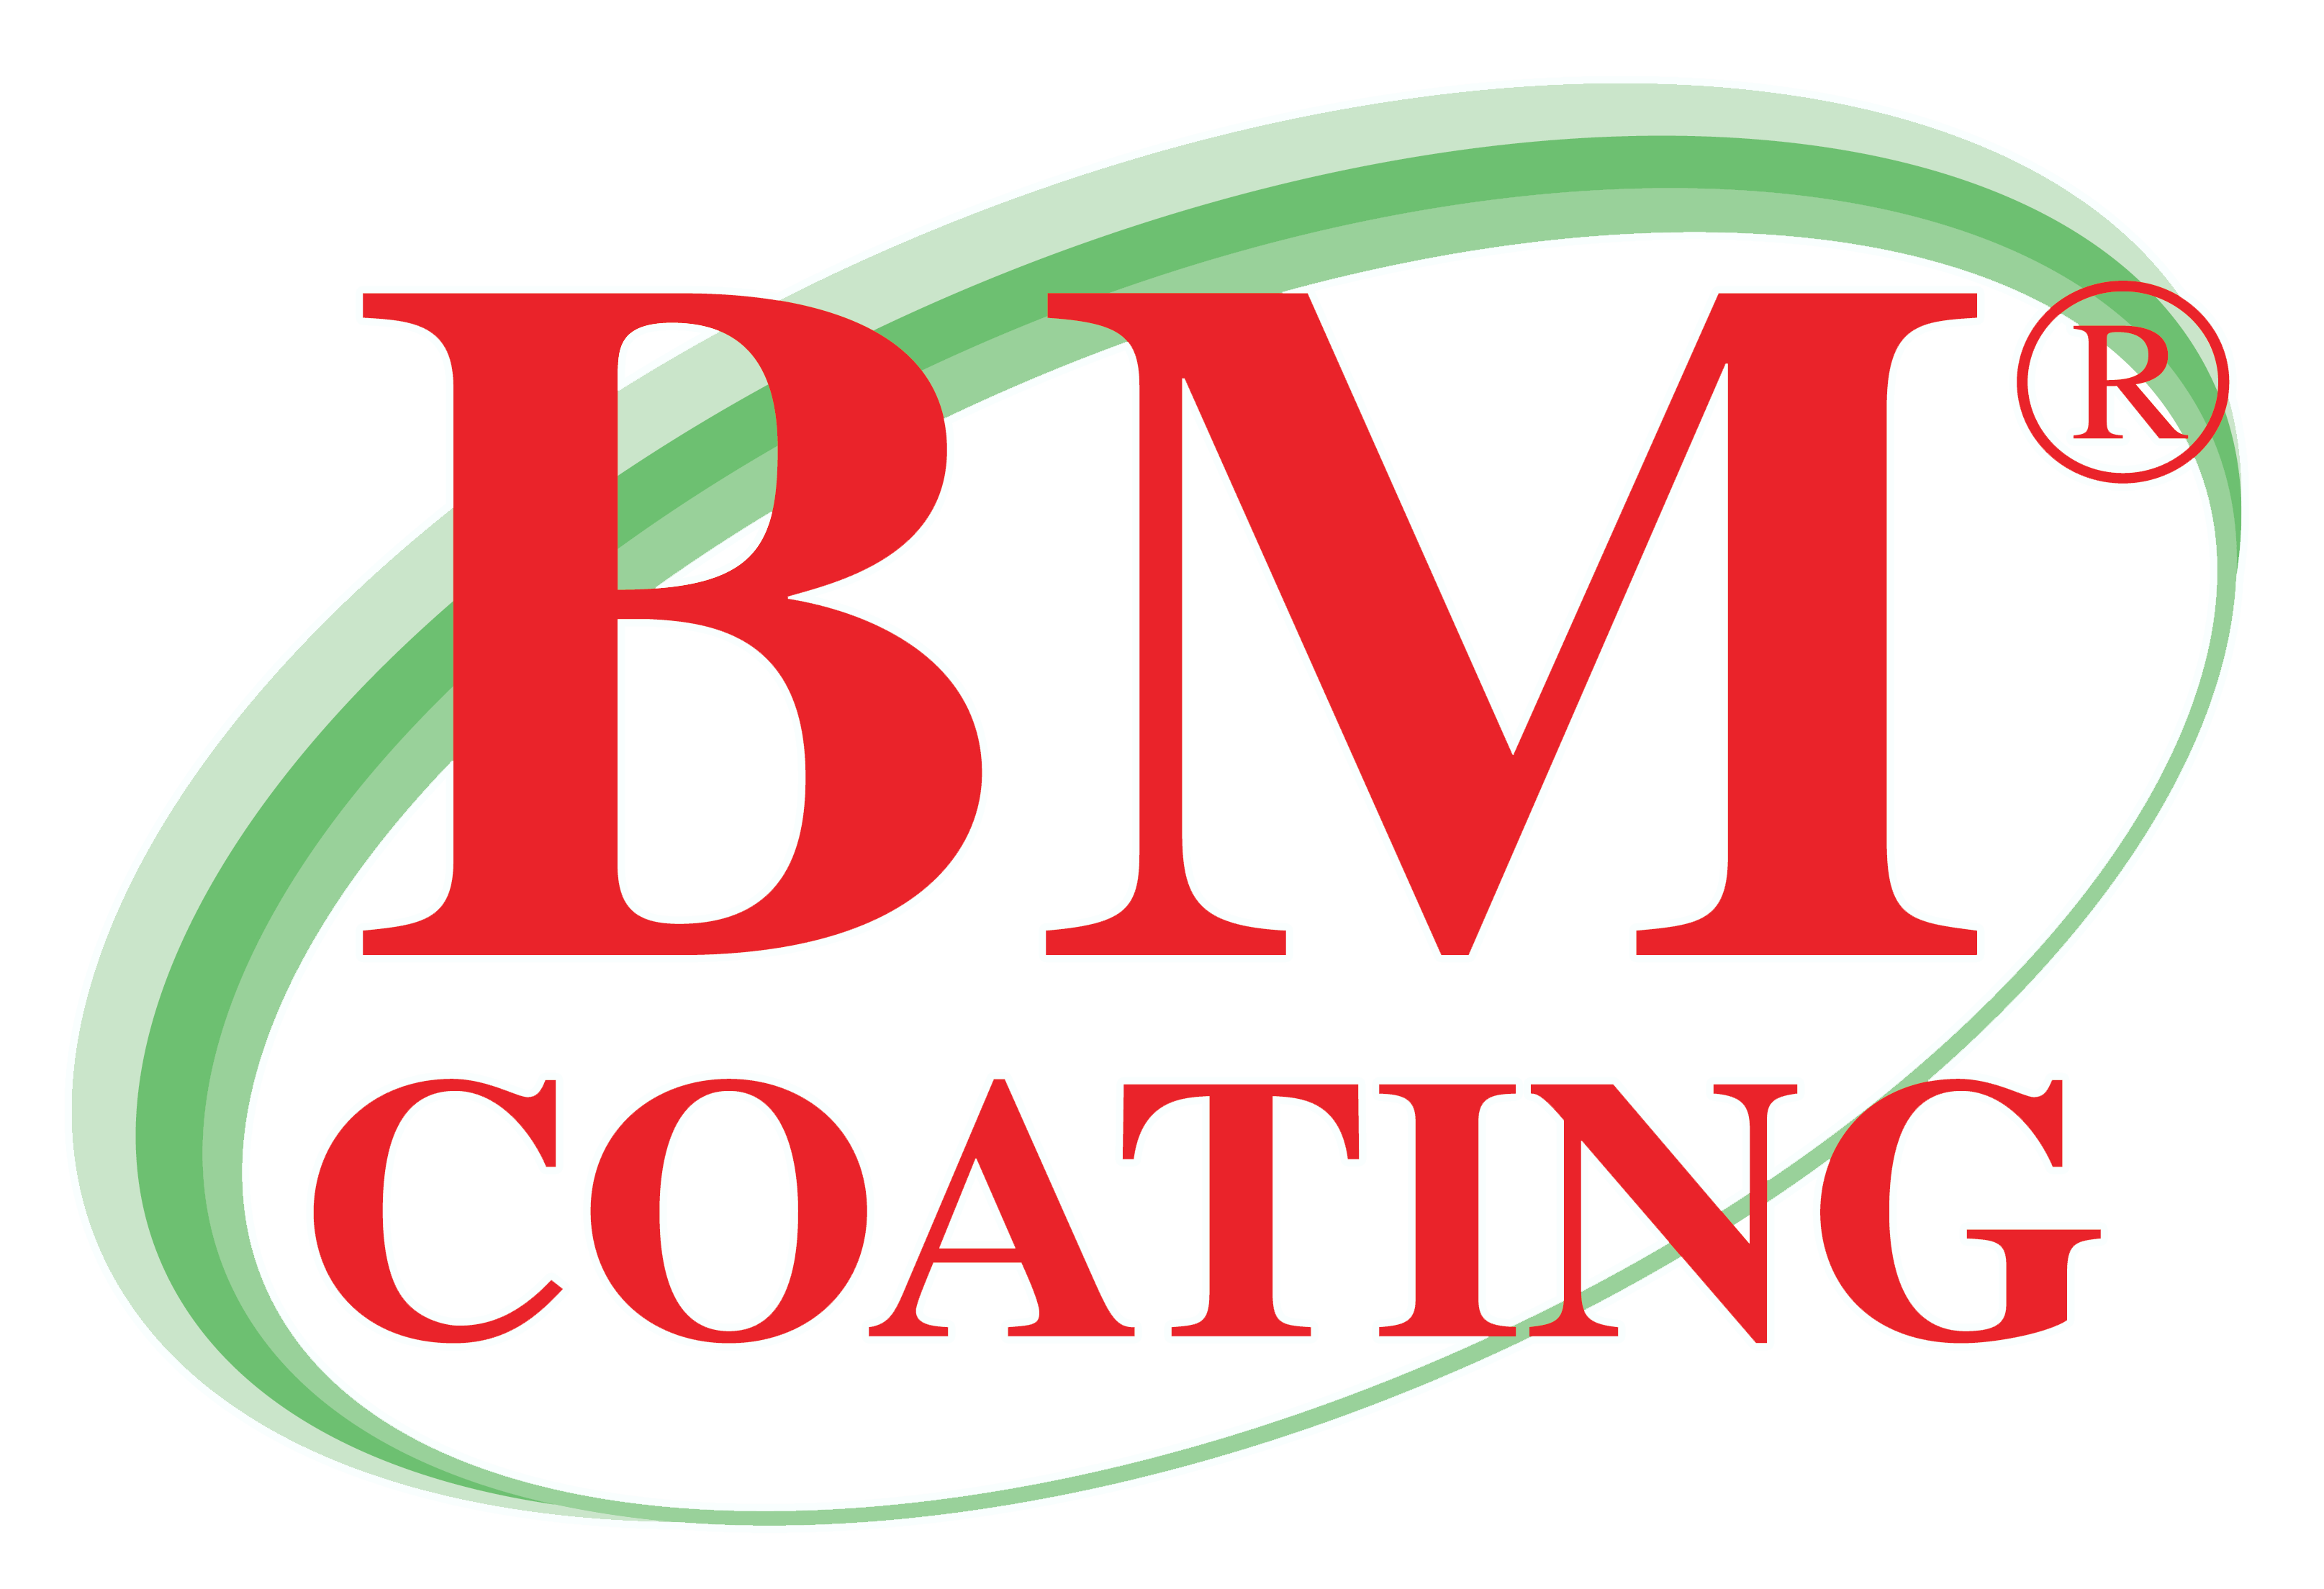 BM Coating & Chemical Sdn Bhd